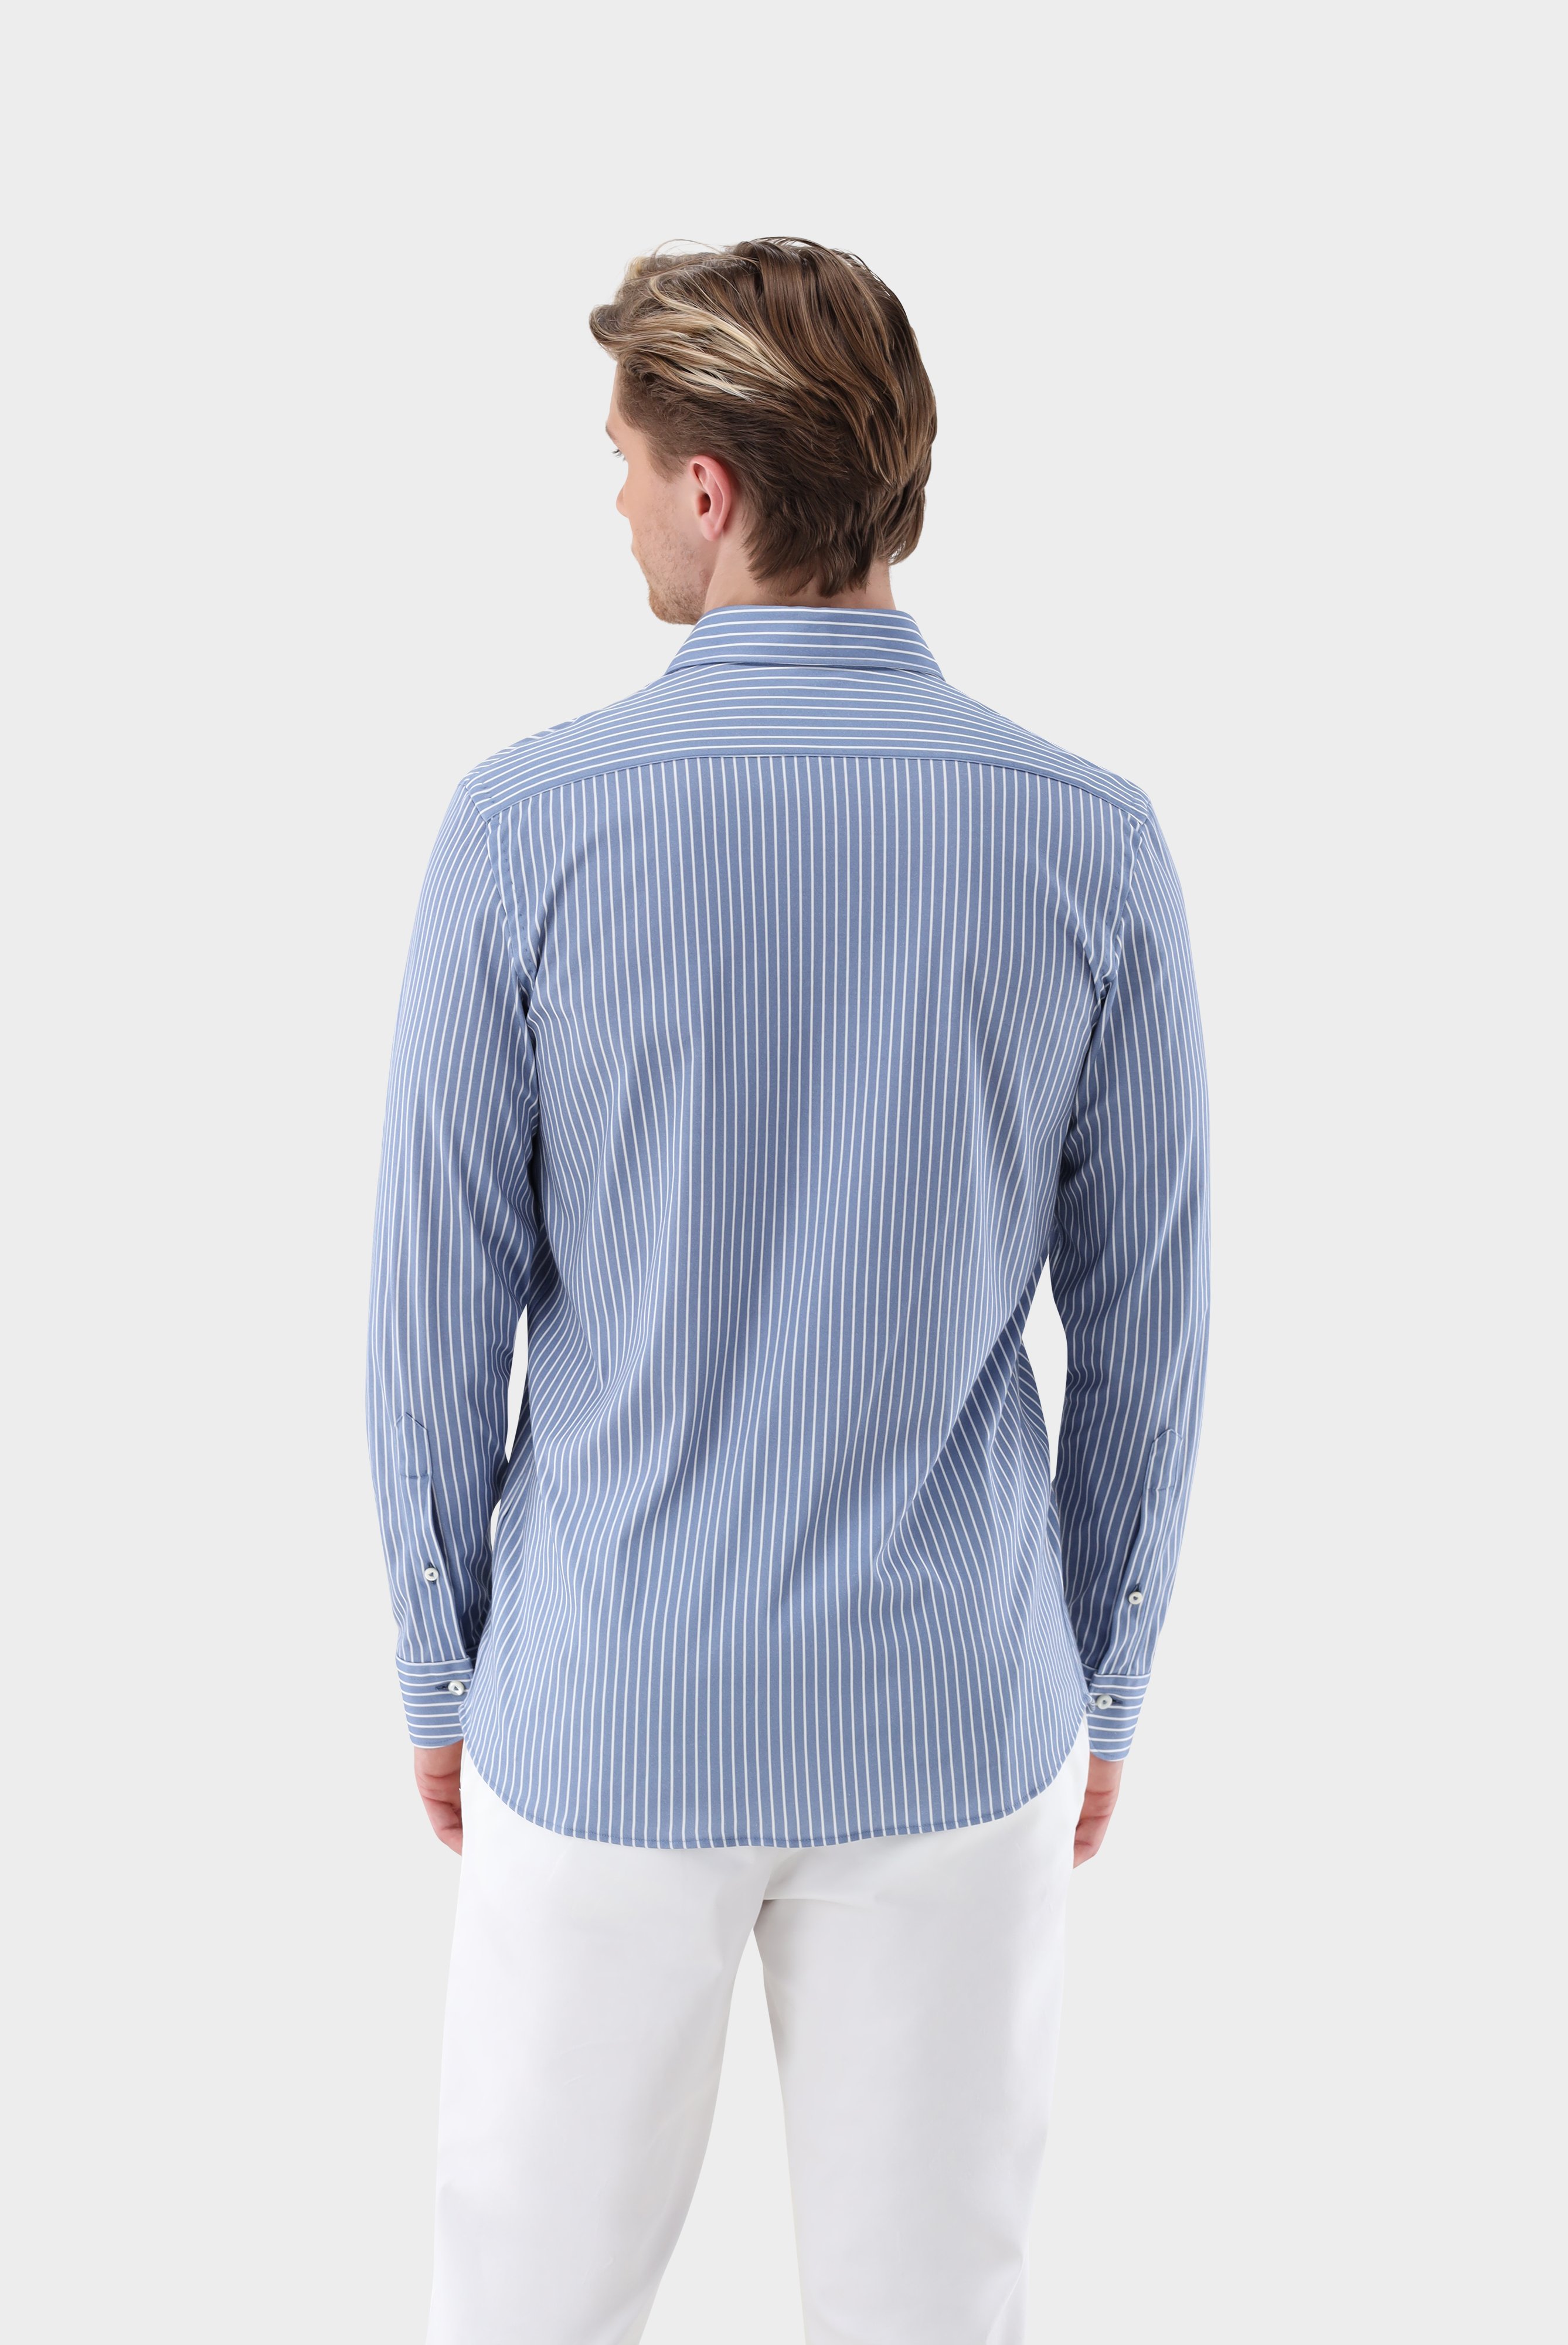 Jersey Hemden+Jersey Hemd mit Nadelstreifen-Druck aus Swiss Cotton+20.1683.WI.187755.740.S